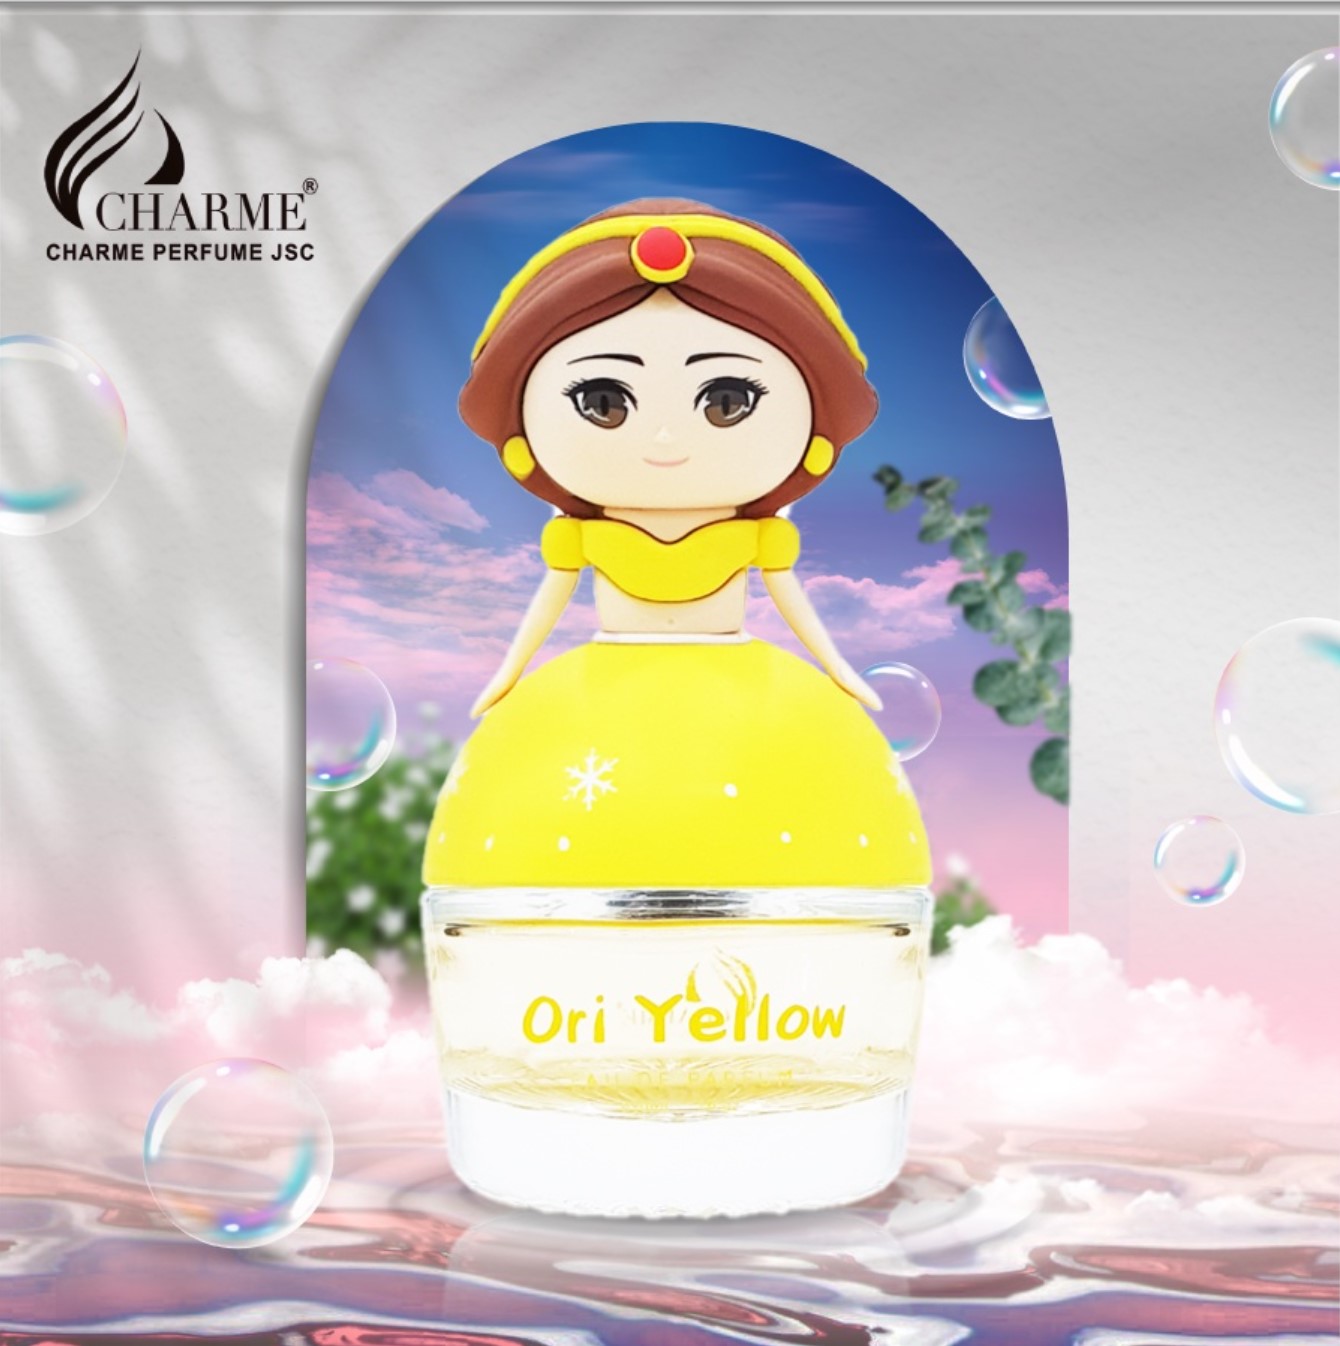 Dầu thơm cho bé Charme Ori Yellow 30ml nhẹ nhàng ngọt ngào an toàn tạo điểm nhấn cho bé trong buổi tiệc